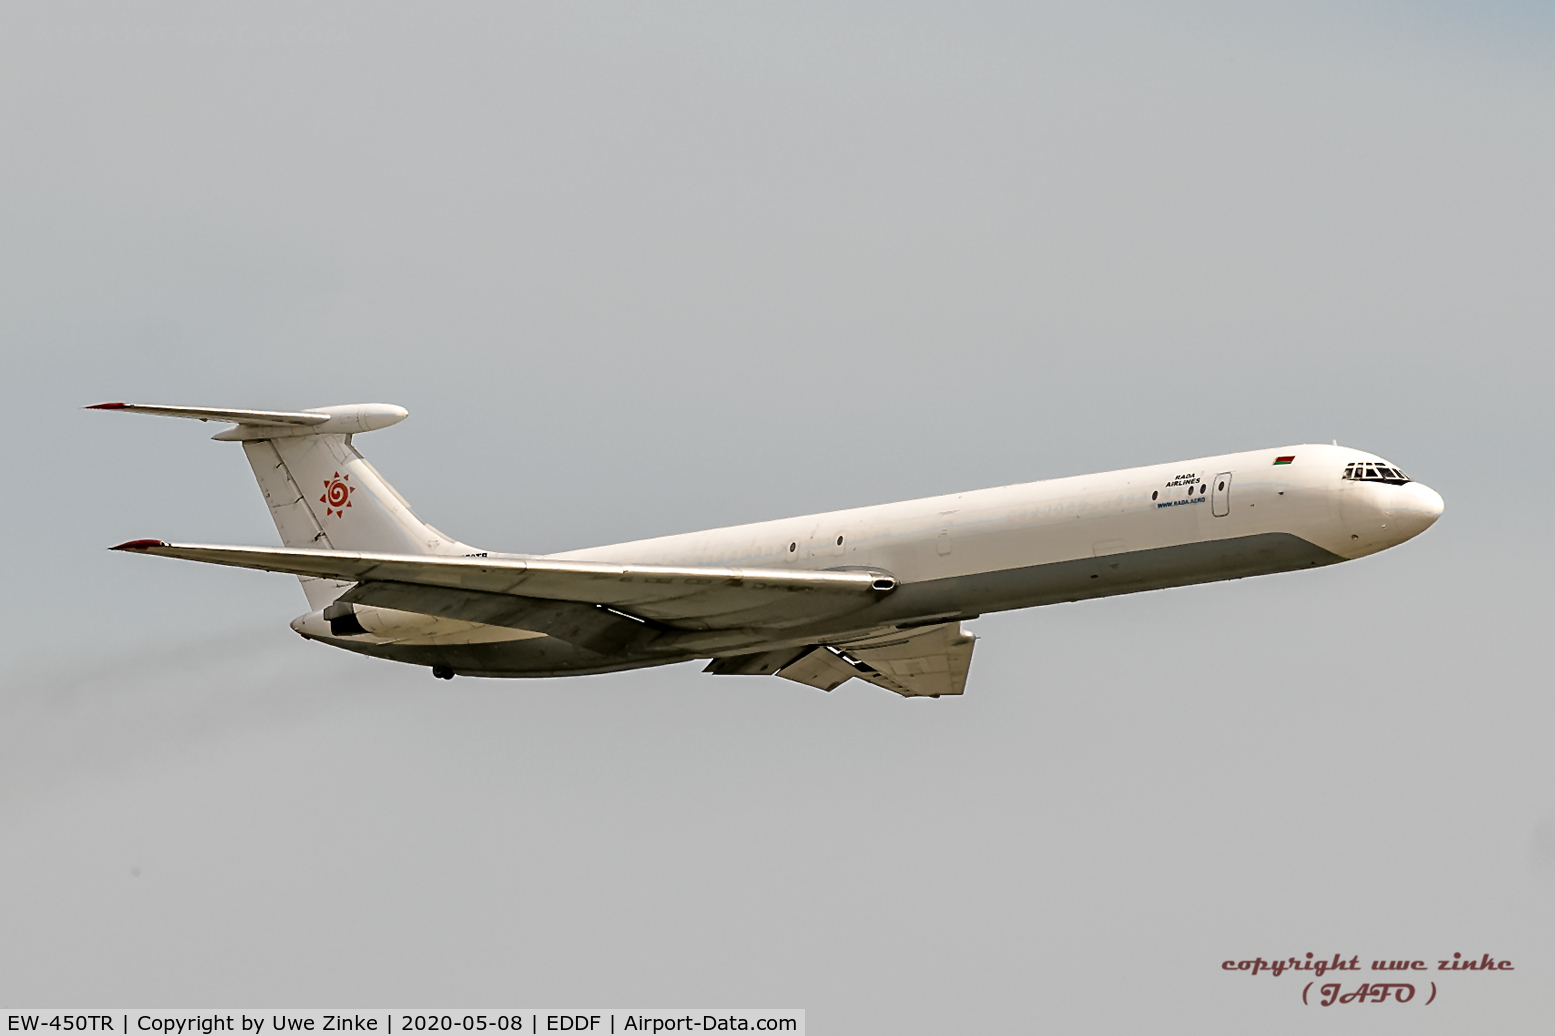 EW-450TR, 1985 Ilyushin Il-62MF C/N 4546257, in Frankfurt